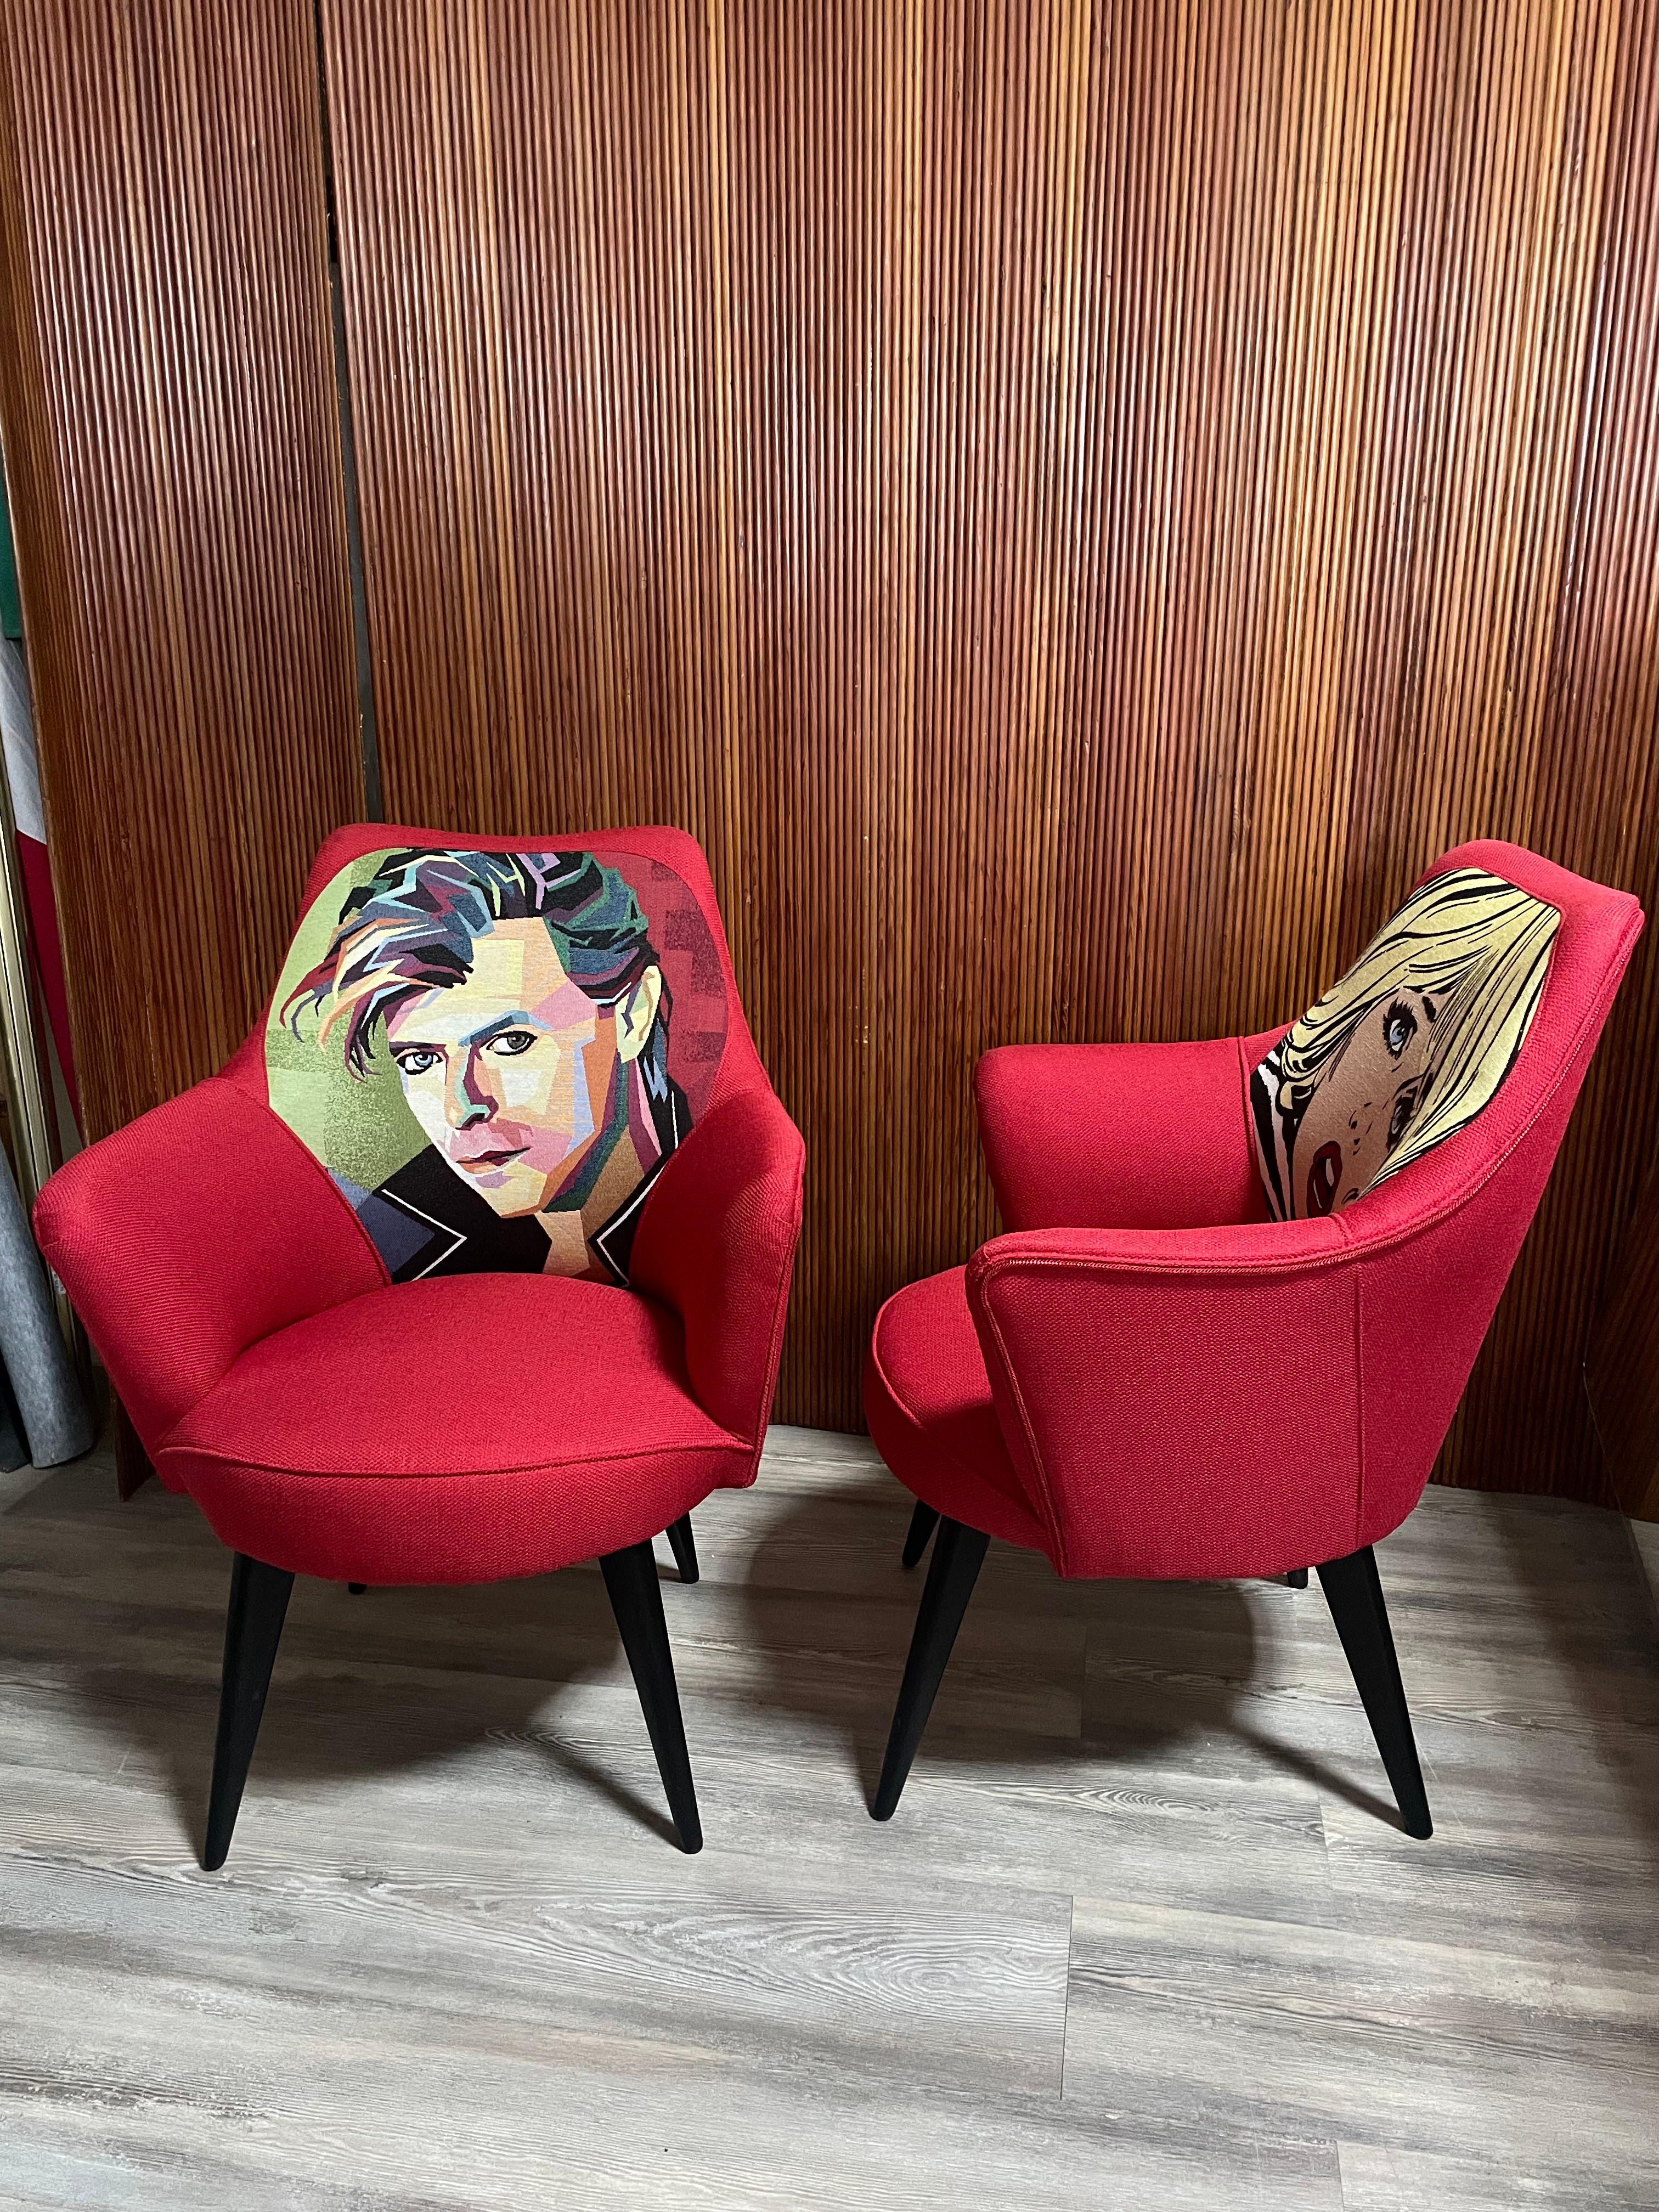 Original 1950er Sessel mit quadratischen Beinen aus lackiertem Holz.

Die Polsterung der Sessel wurde vor kurzem erneuert, wobei der ursprüngliche Charakter der Rückenlehnen, auf denen zwei Pop-Art-Ikonen abgebildet sind, erhalten blieb.